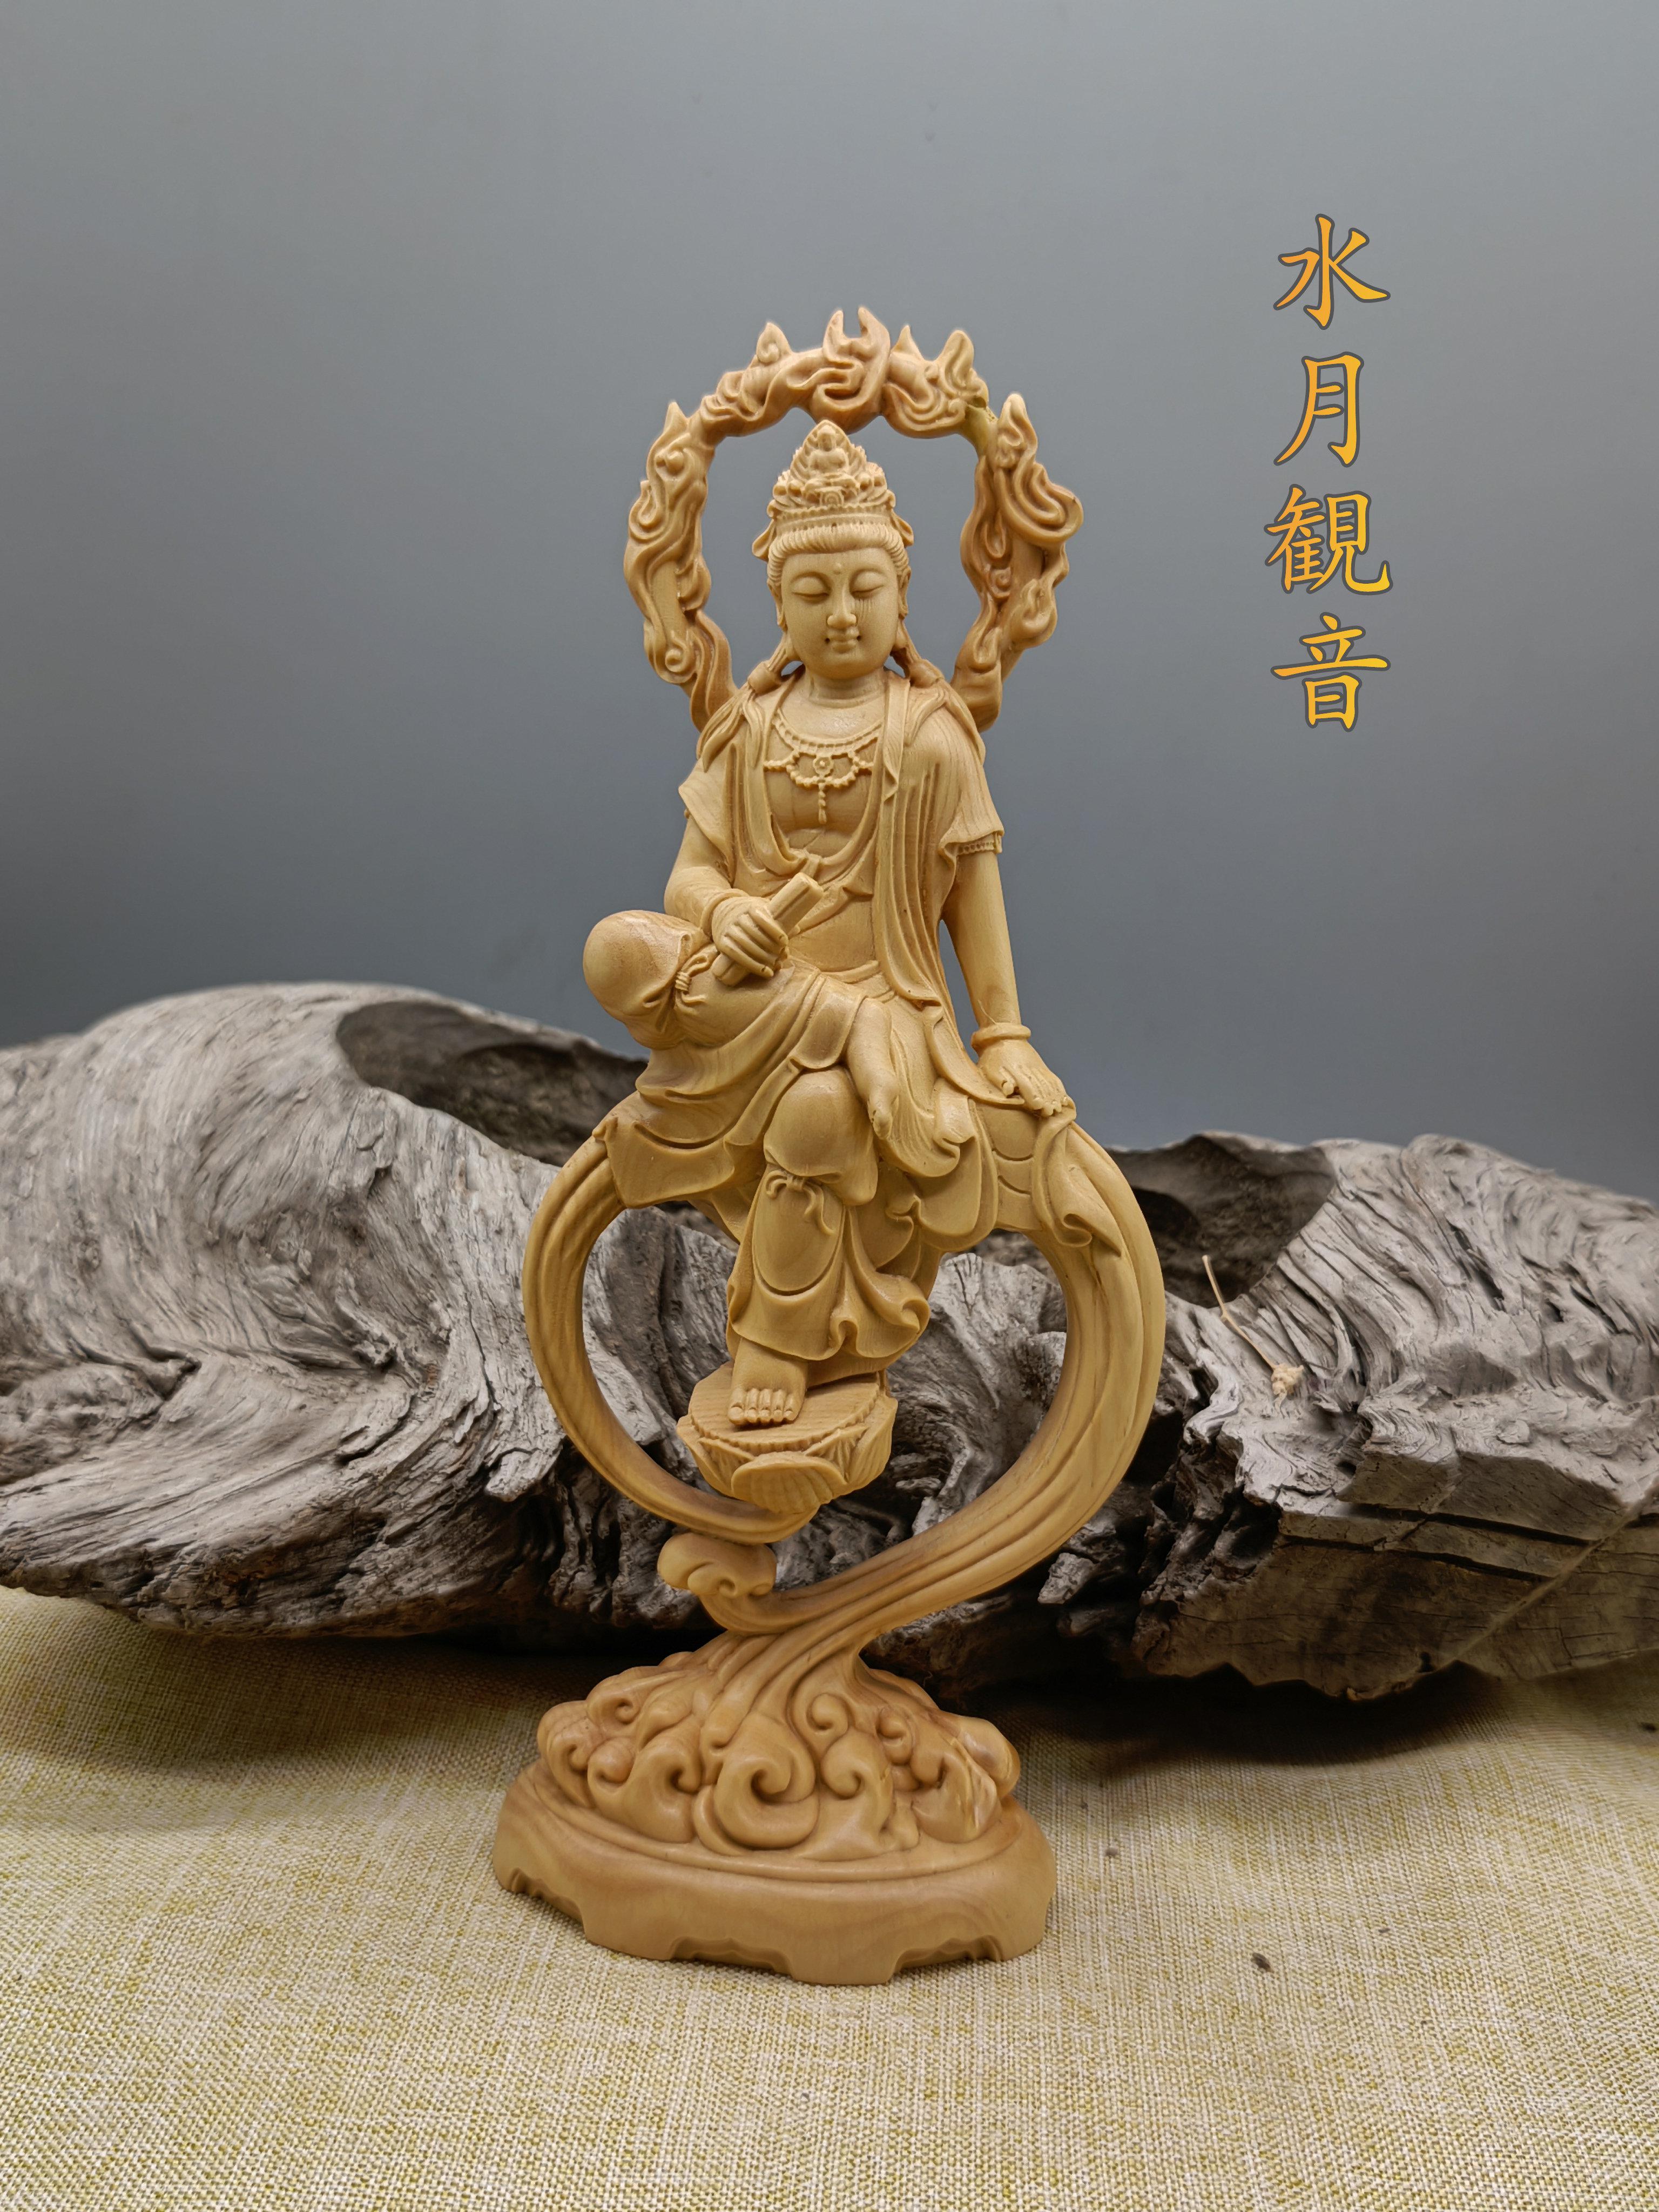 極上質 持珠観音 仏教工芸品 精密細工 開運風水 仏壇仏像 木彫仏像 - 彫刻